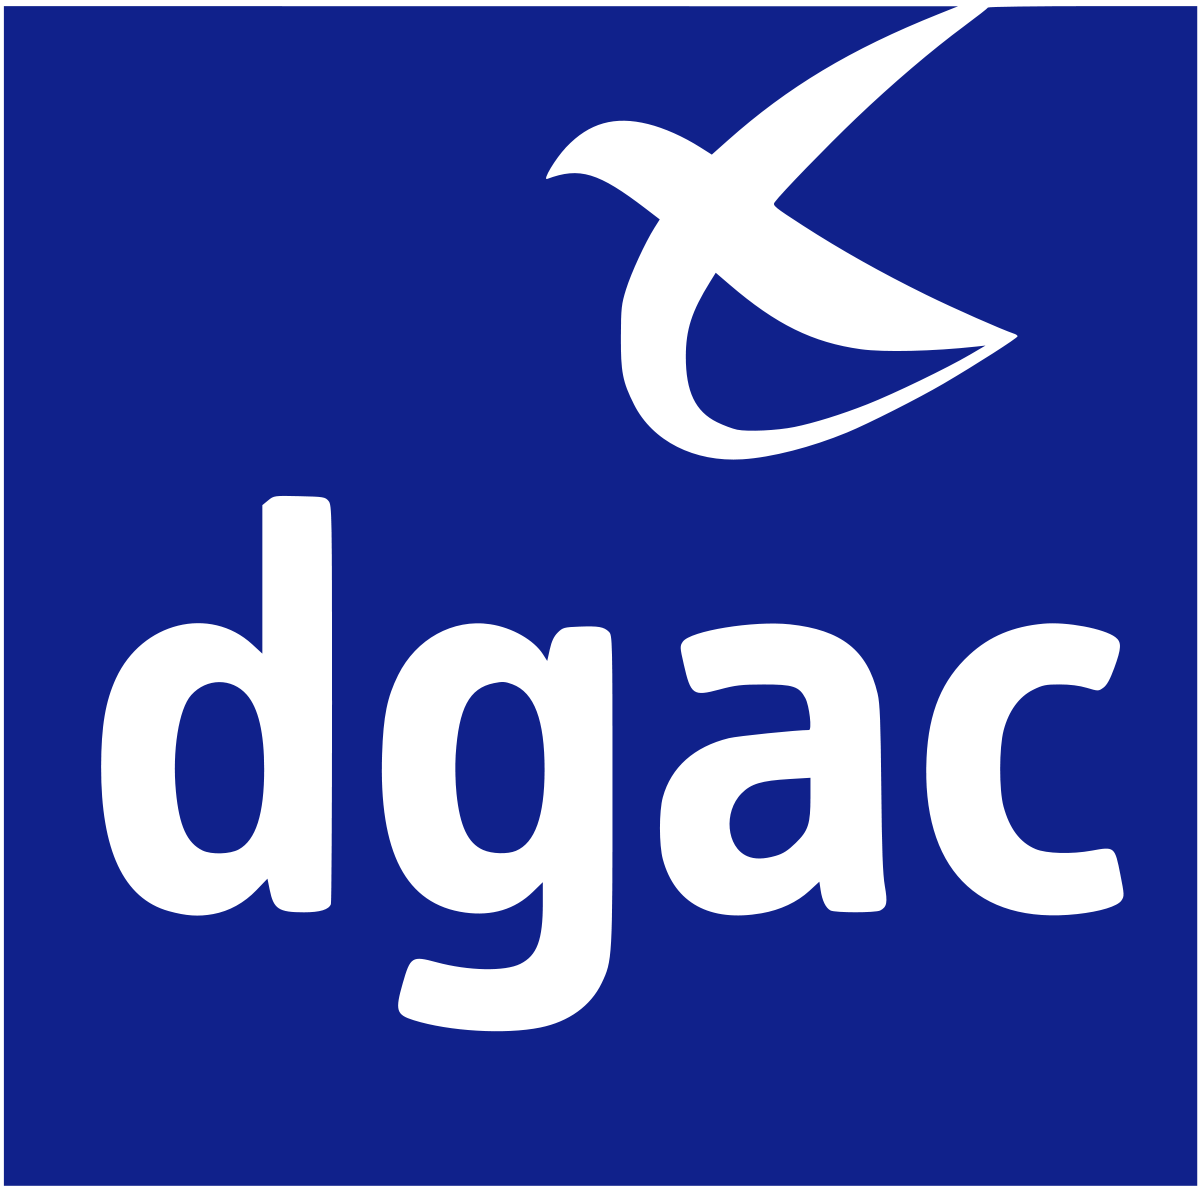 Service de la Navigation Aérienne Région Parisien: aéroports Charles de Gaule, Orly, Le Bourget. 